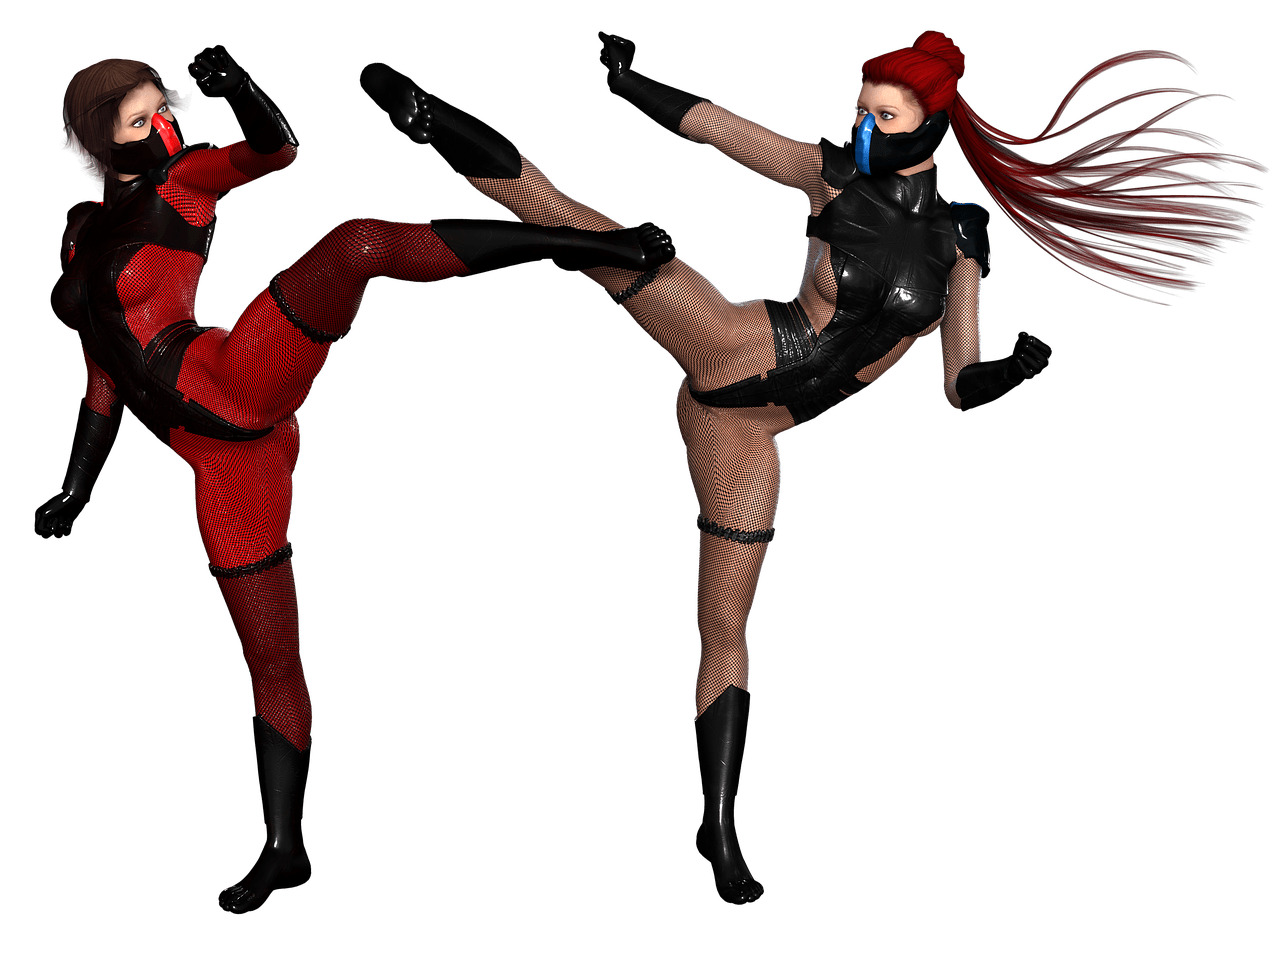 Woman Ninjas Fighting Pose icons